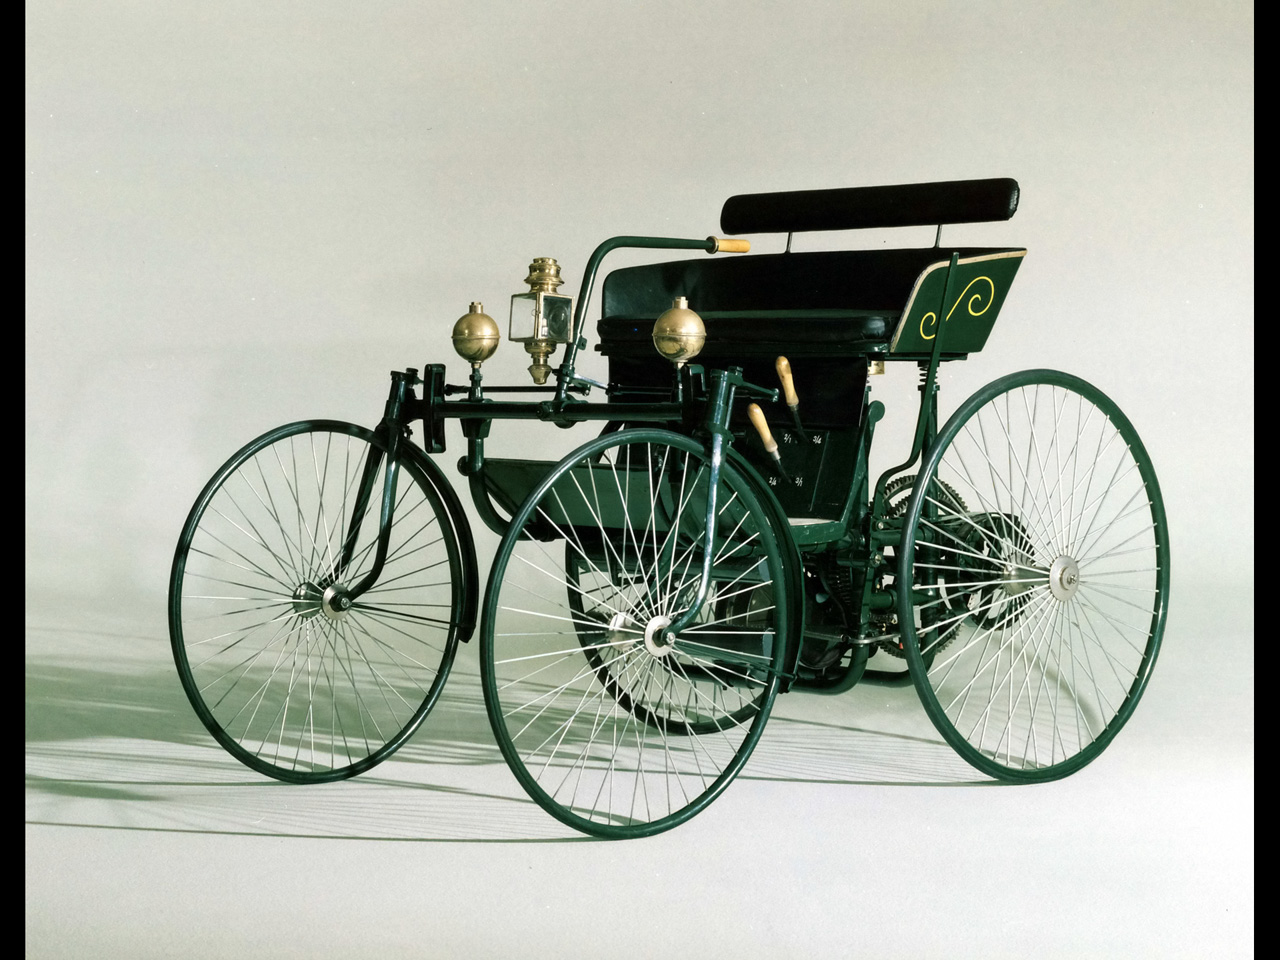 1889 Daimler Wire Wheel Car